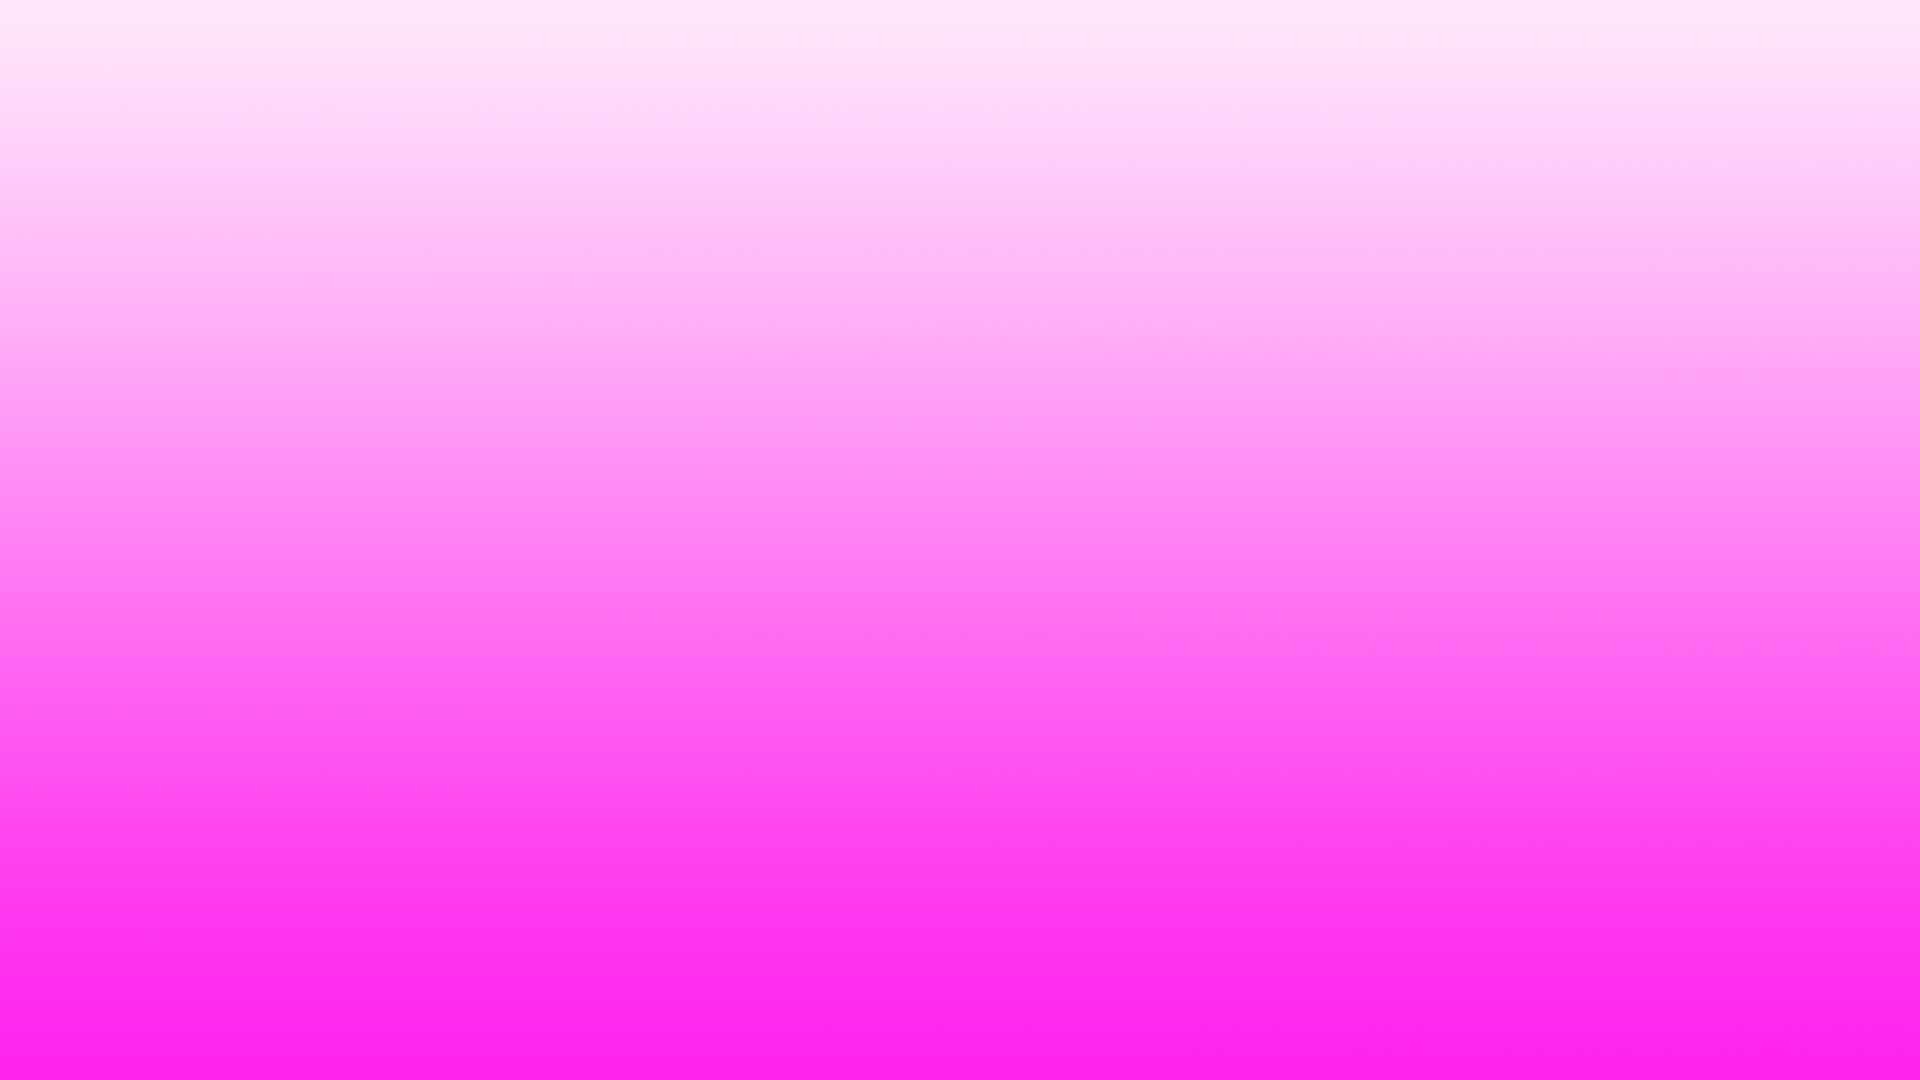 1920x1080 Pink Gradient iMovie Background Free